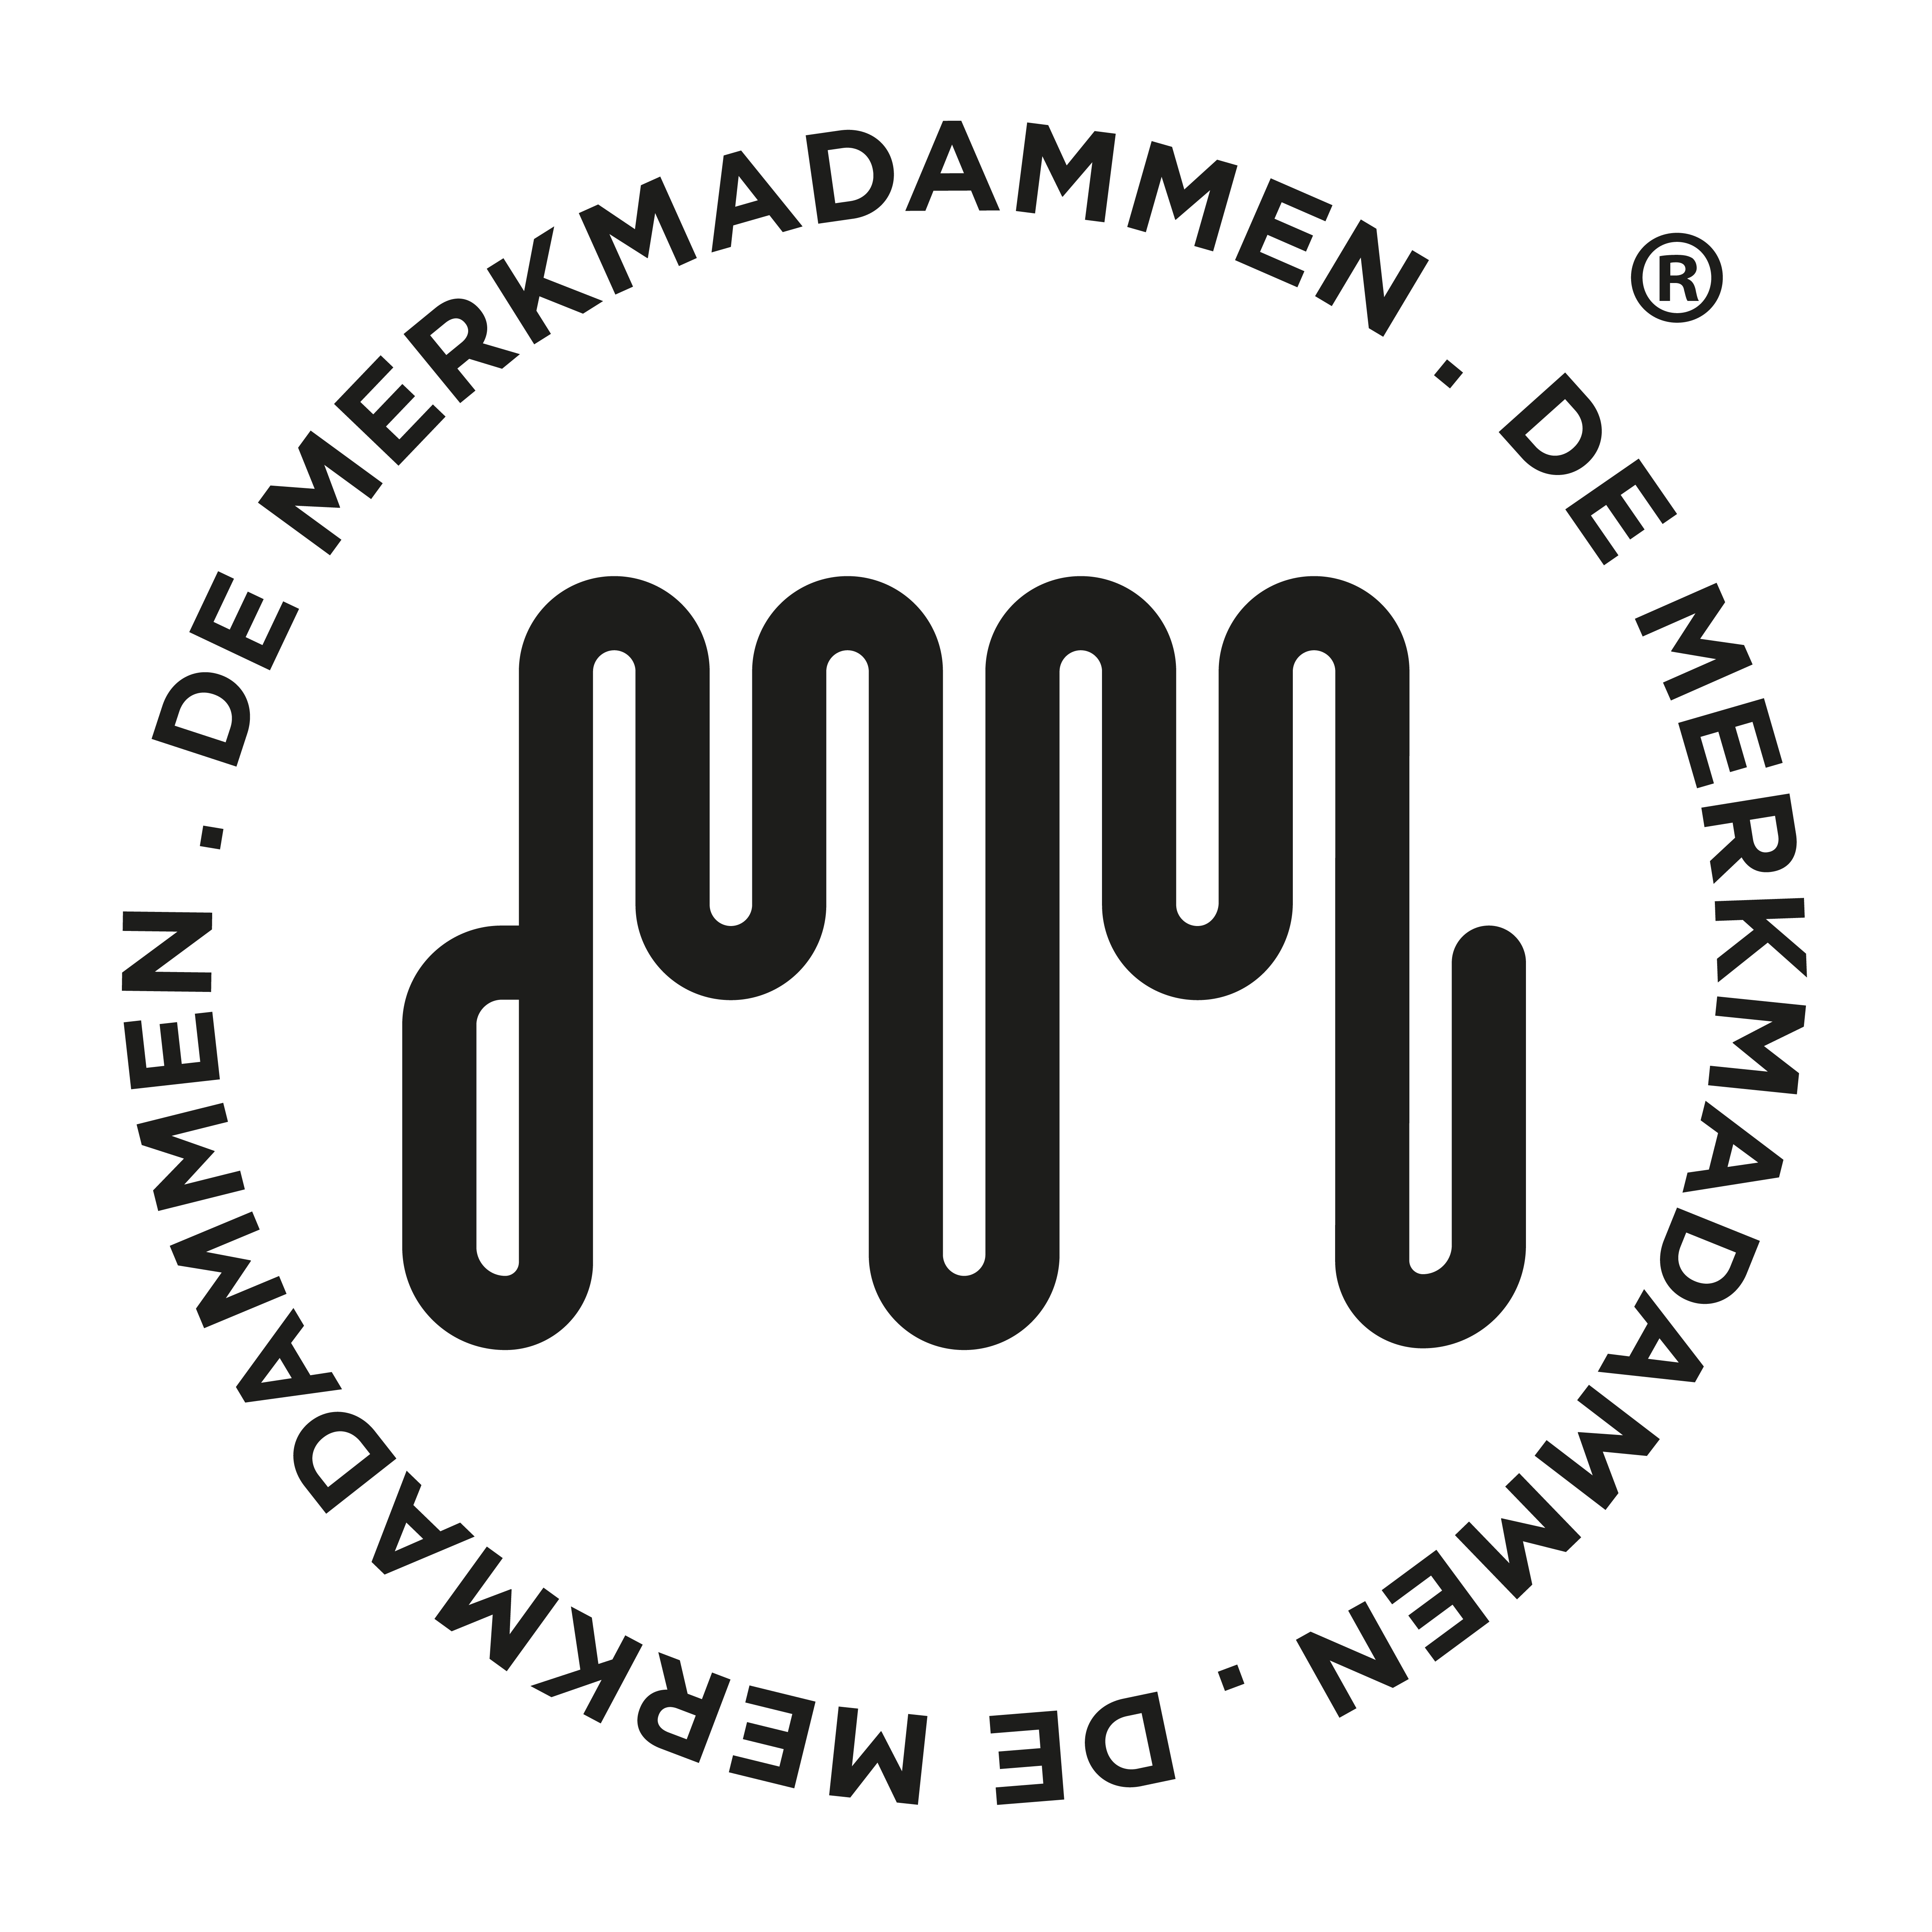 logo van De Merkmadammen